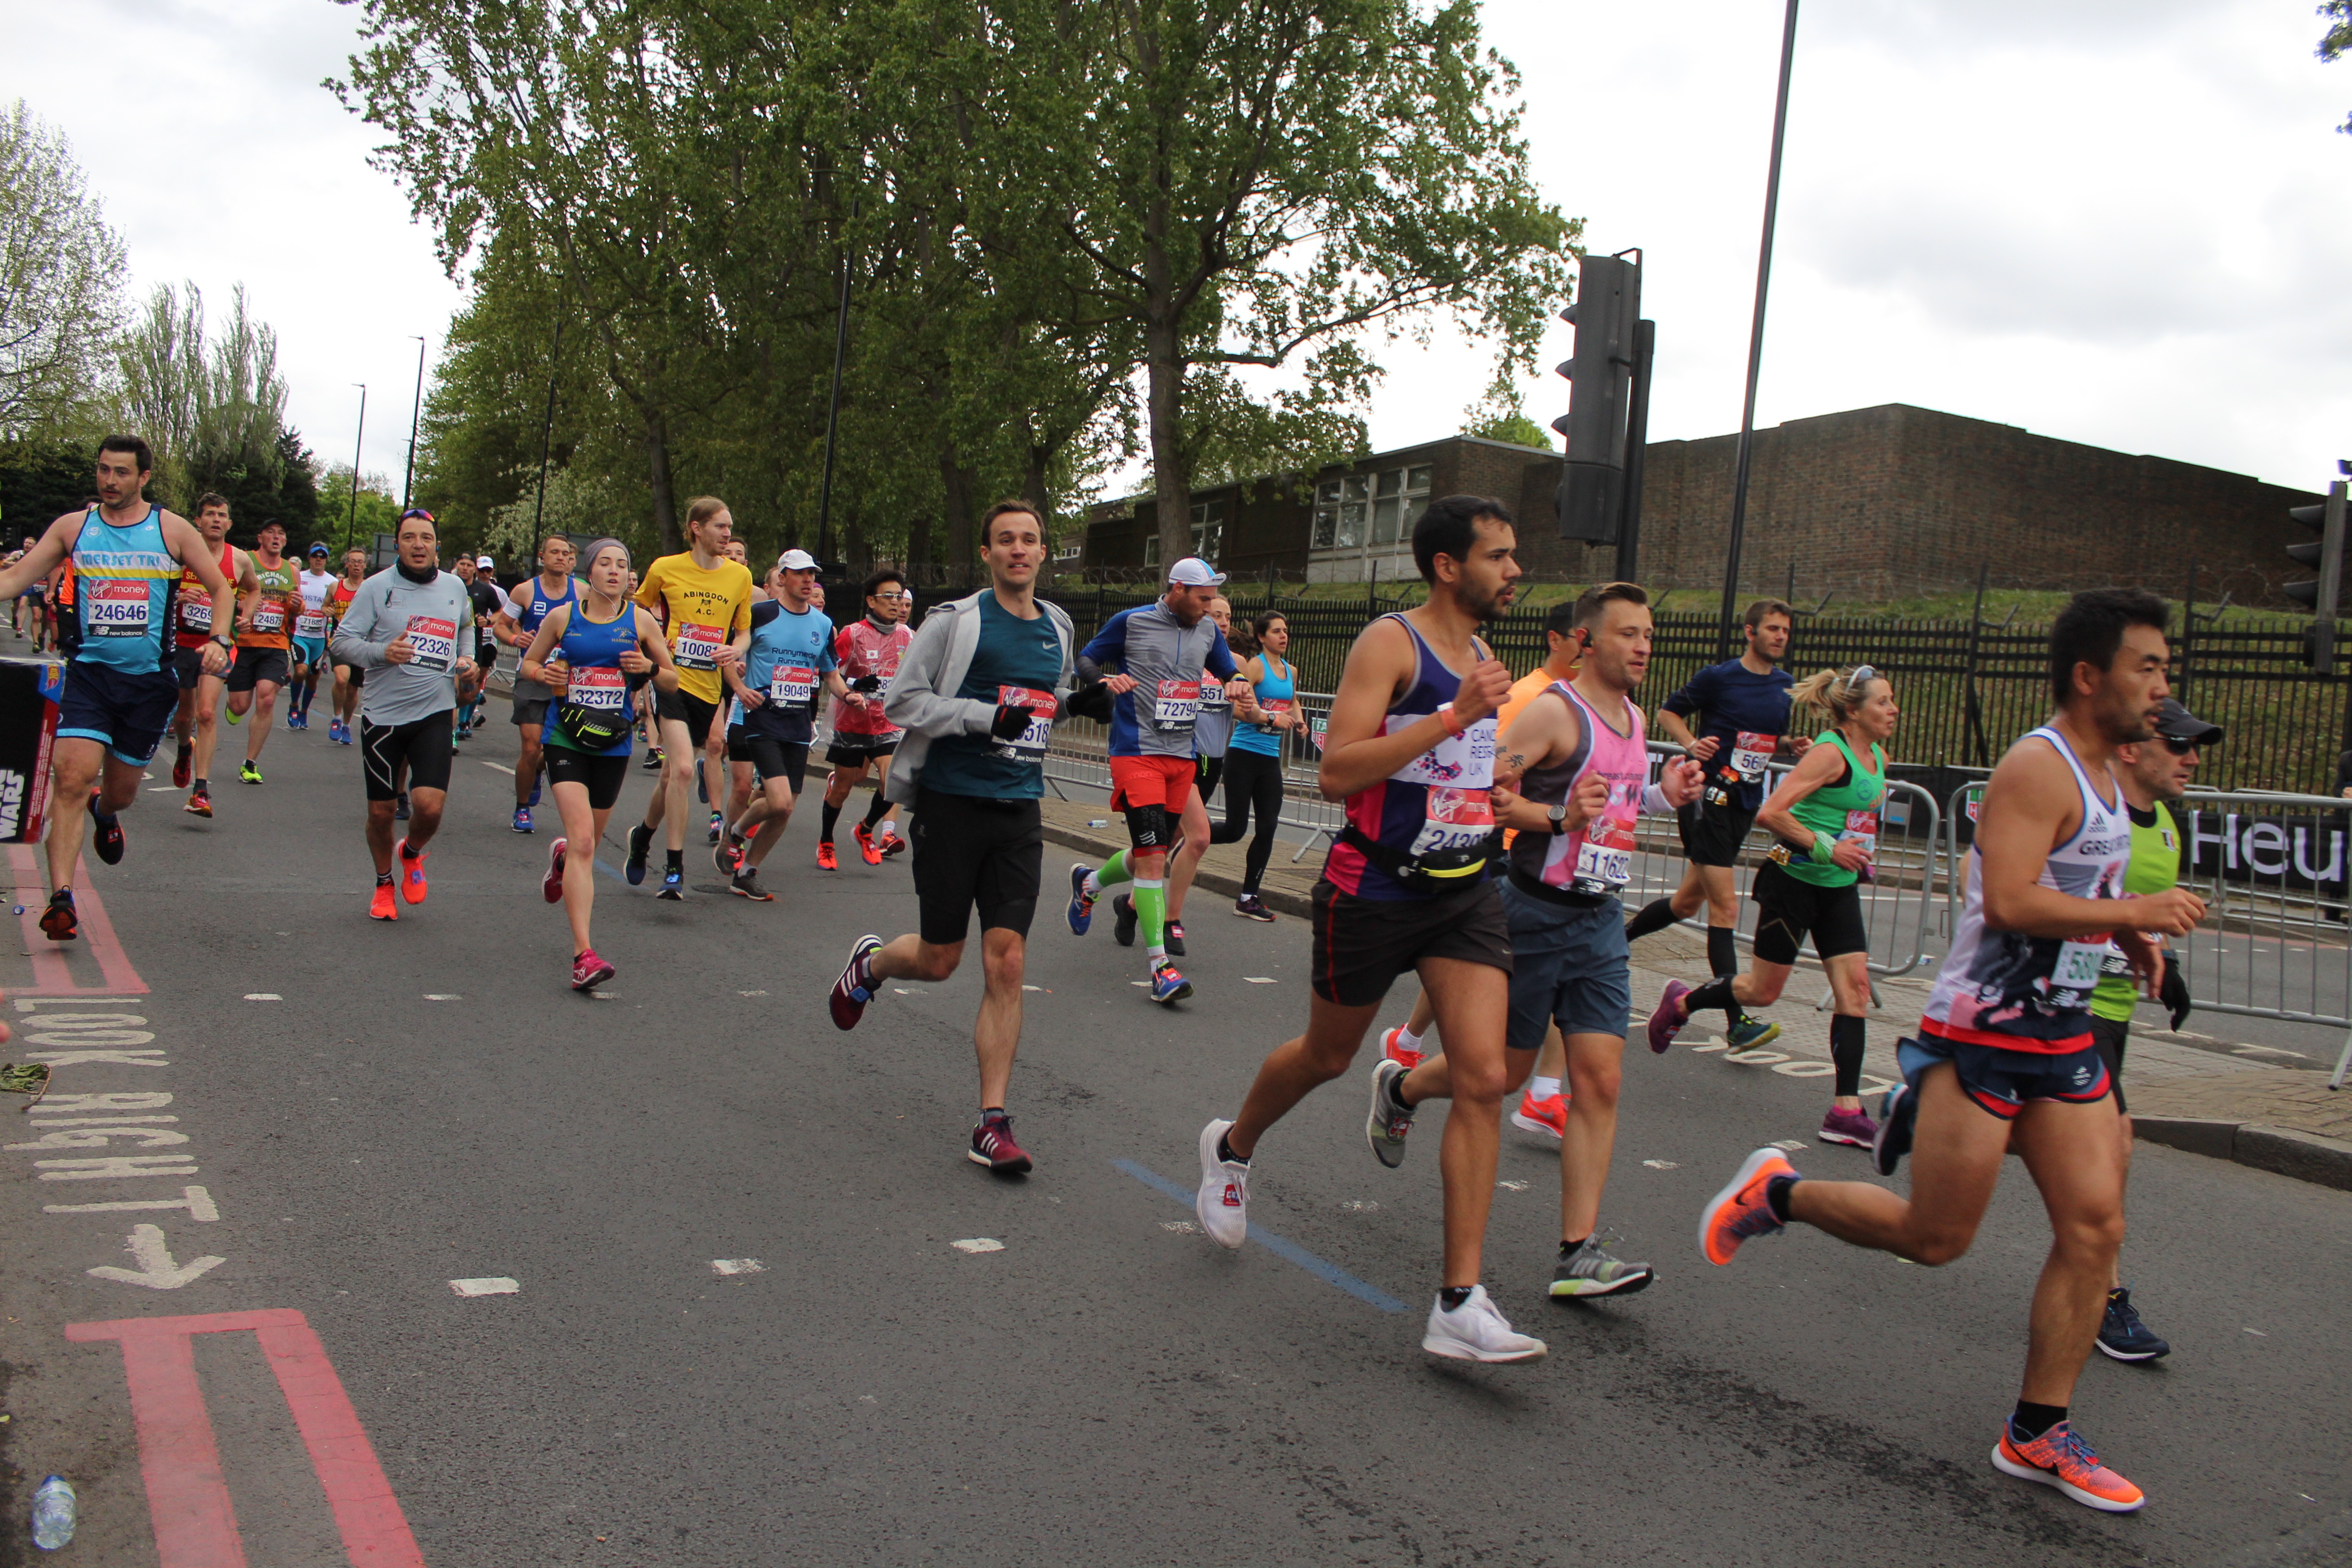 Maratona di Londra, vittoria per il secondo anno di fila per